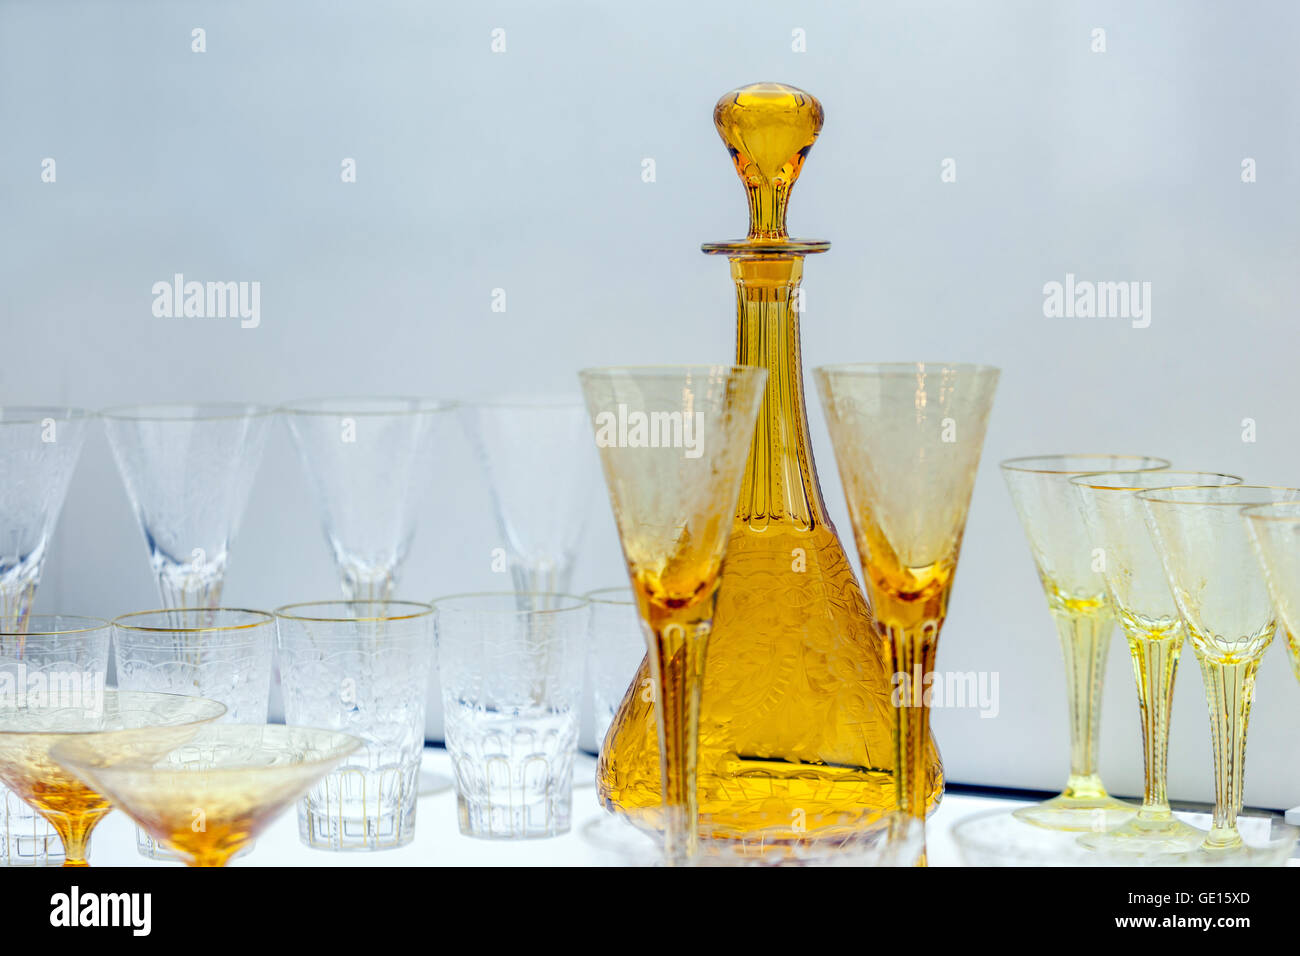 Bohemia crystal glass, Moser glassworks, Karlovy Vary Czech Republic Glassware Stock Photo